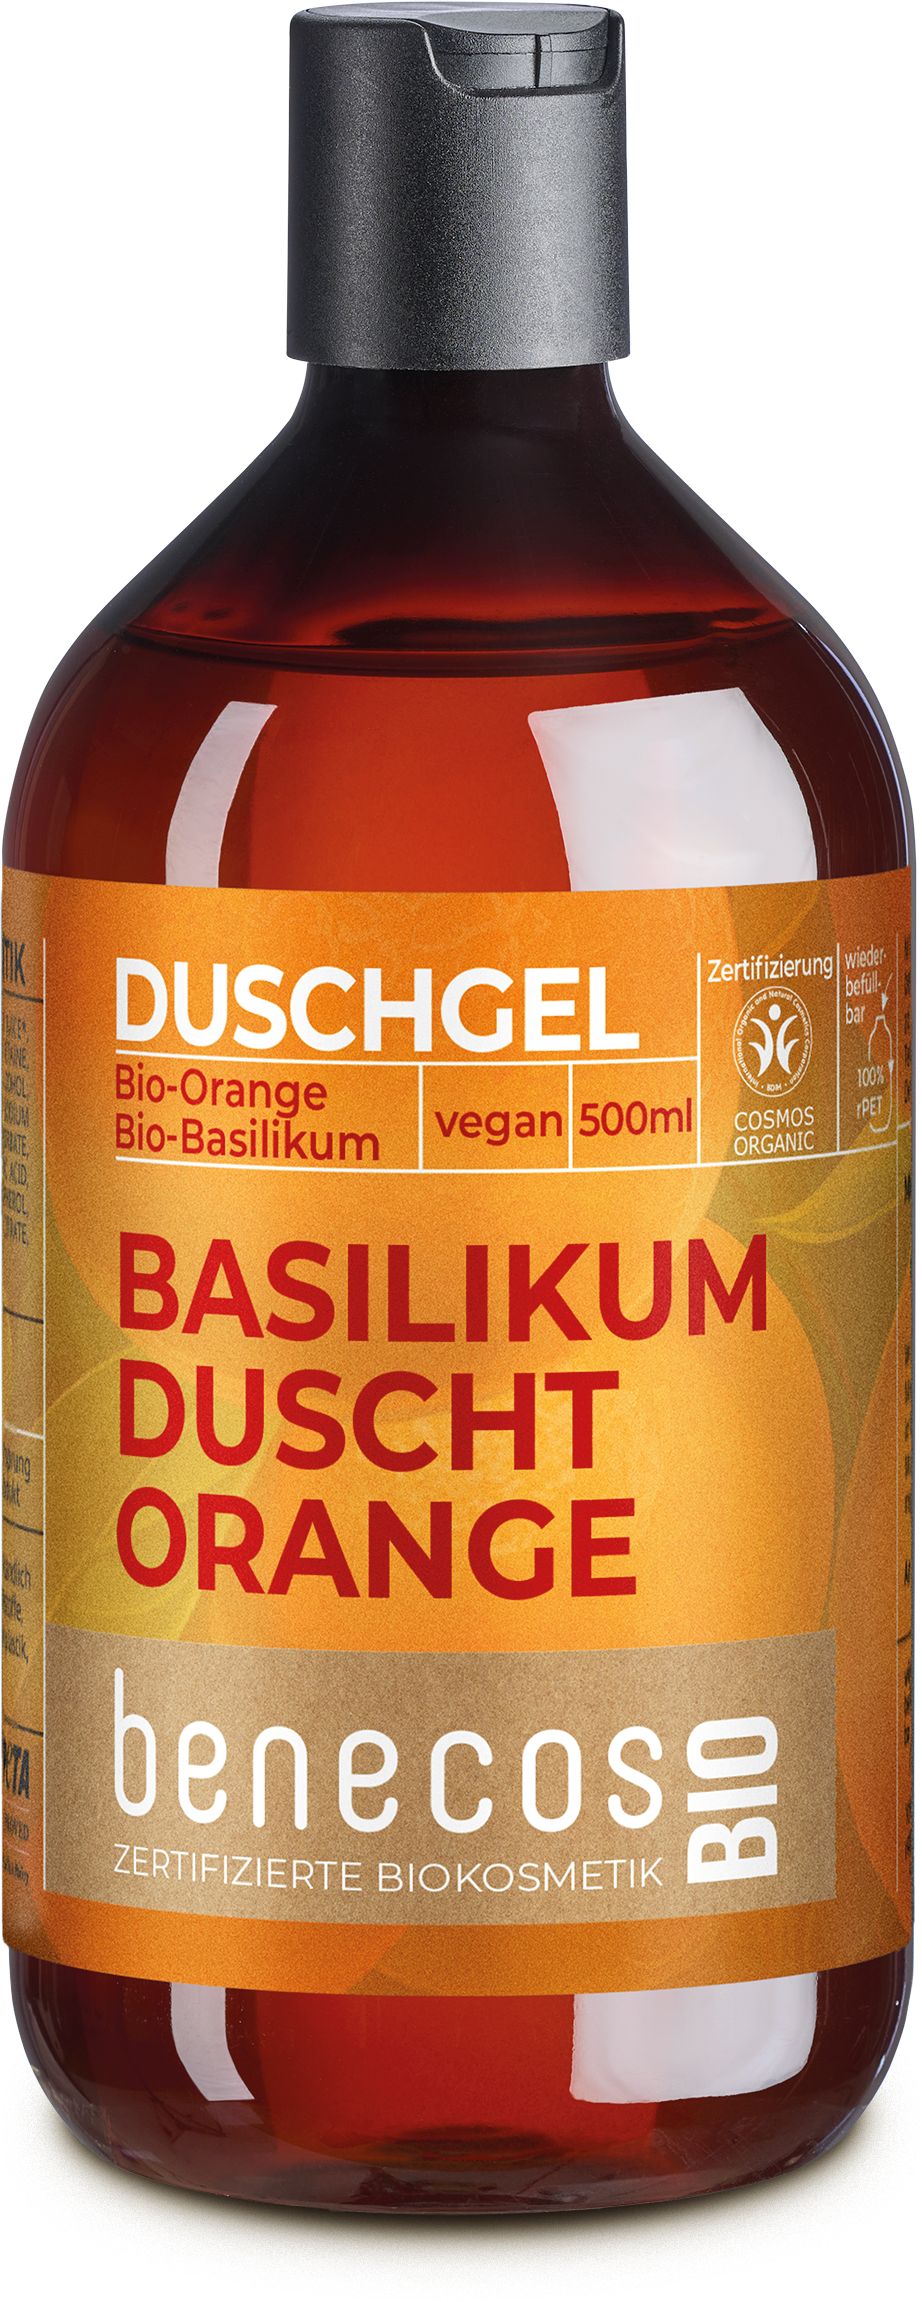 Duschgel Orange-Basilikum